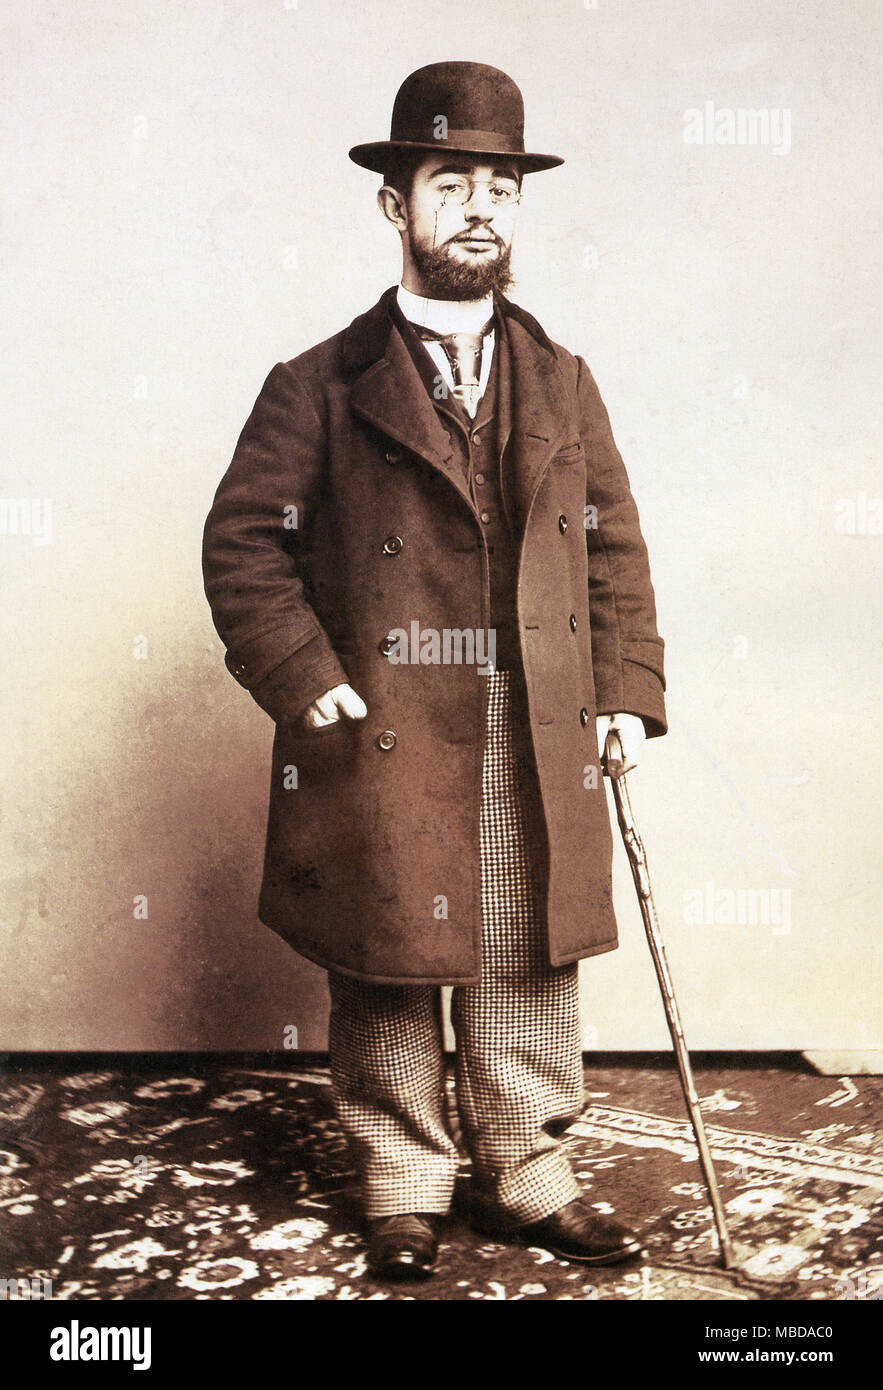 Henri de Toulouse Lautrec, 1895 Portrait du peintre, graveur, dessinateur, caricaturiste et illustrateur, célèbre pour son style de vie bohème au tournant du siècle, Montmartre, décédé en 1901 Banque D'Images